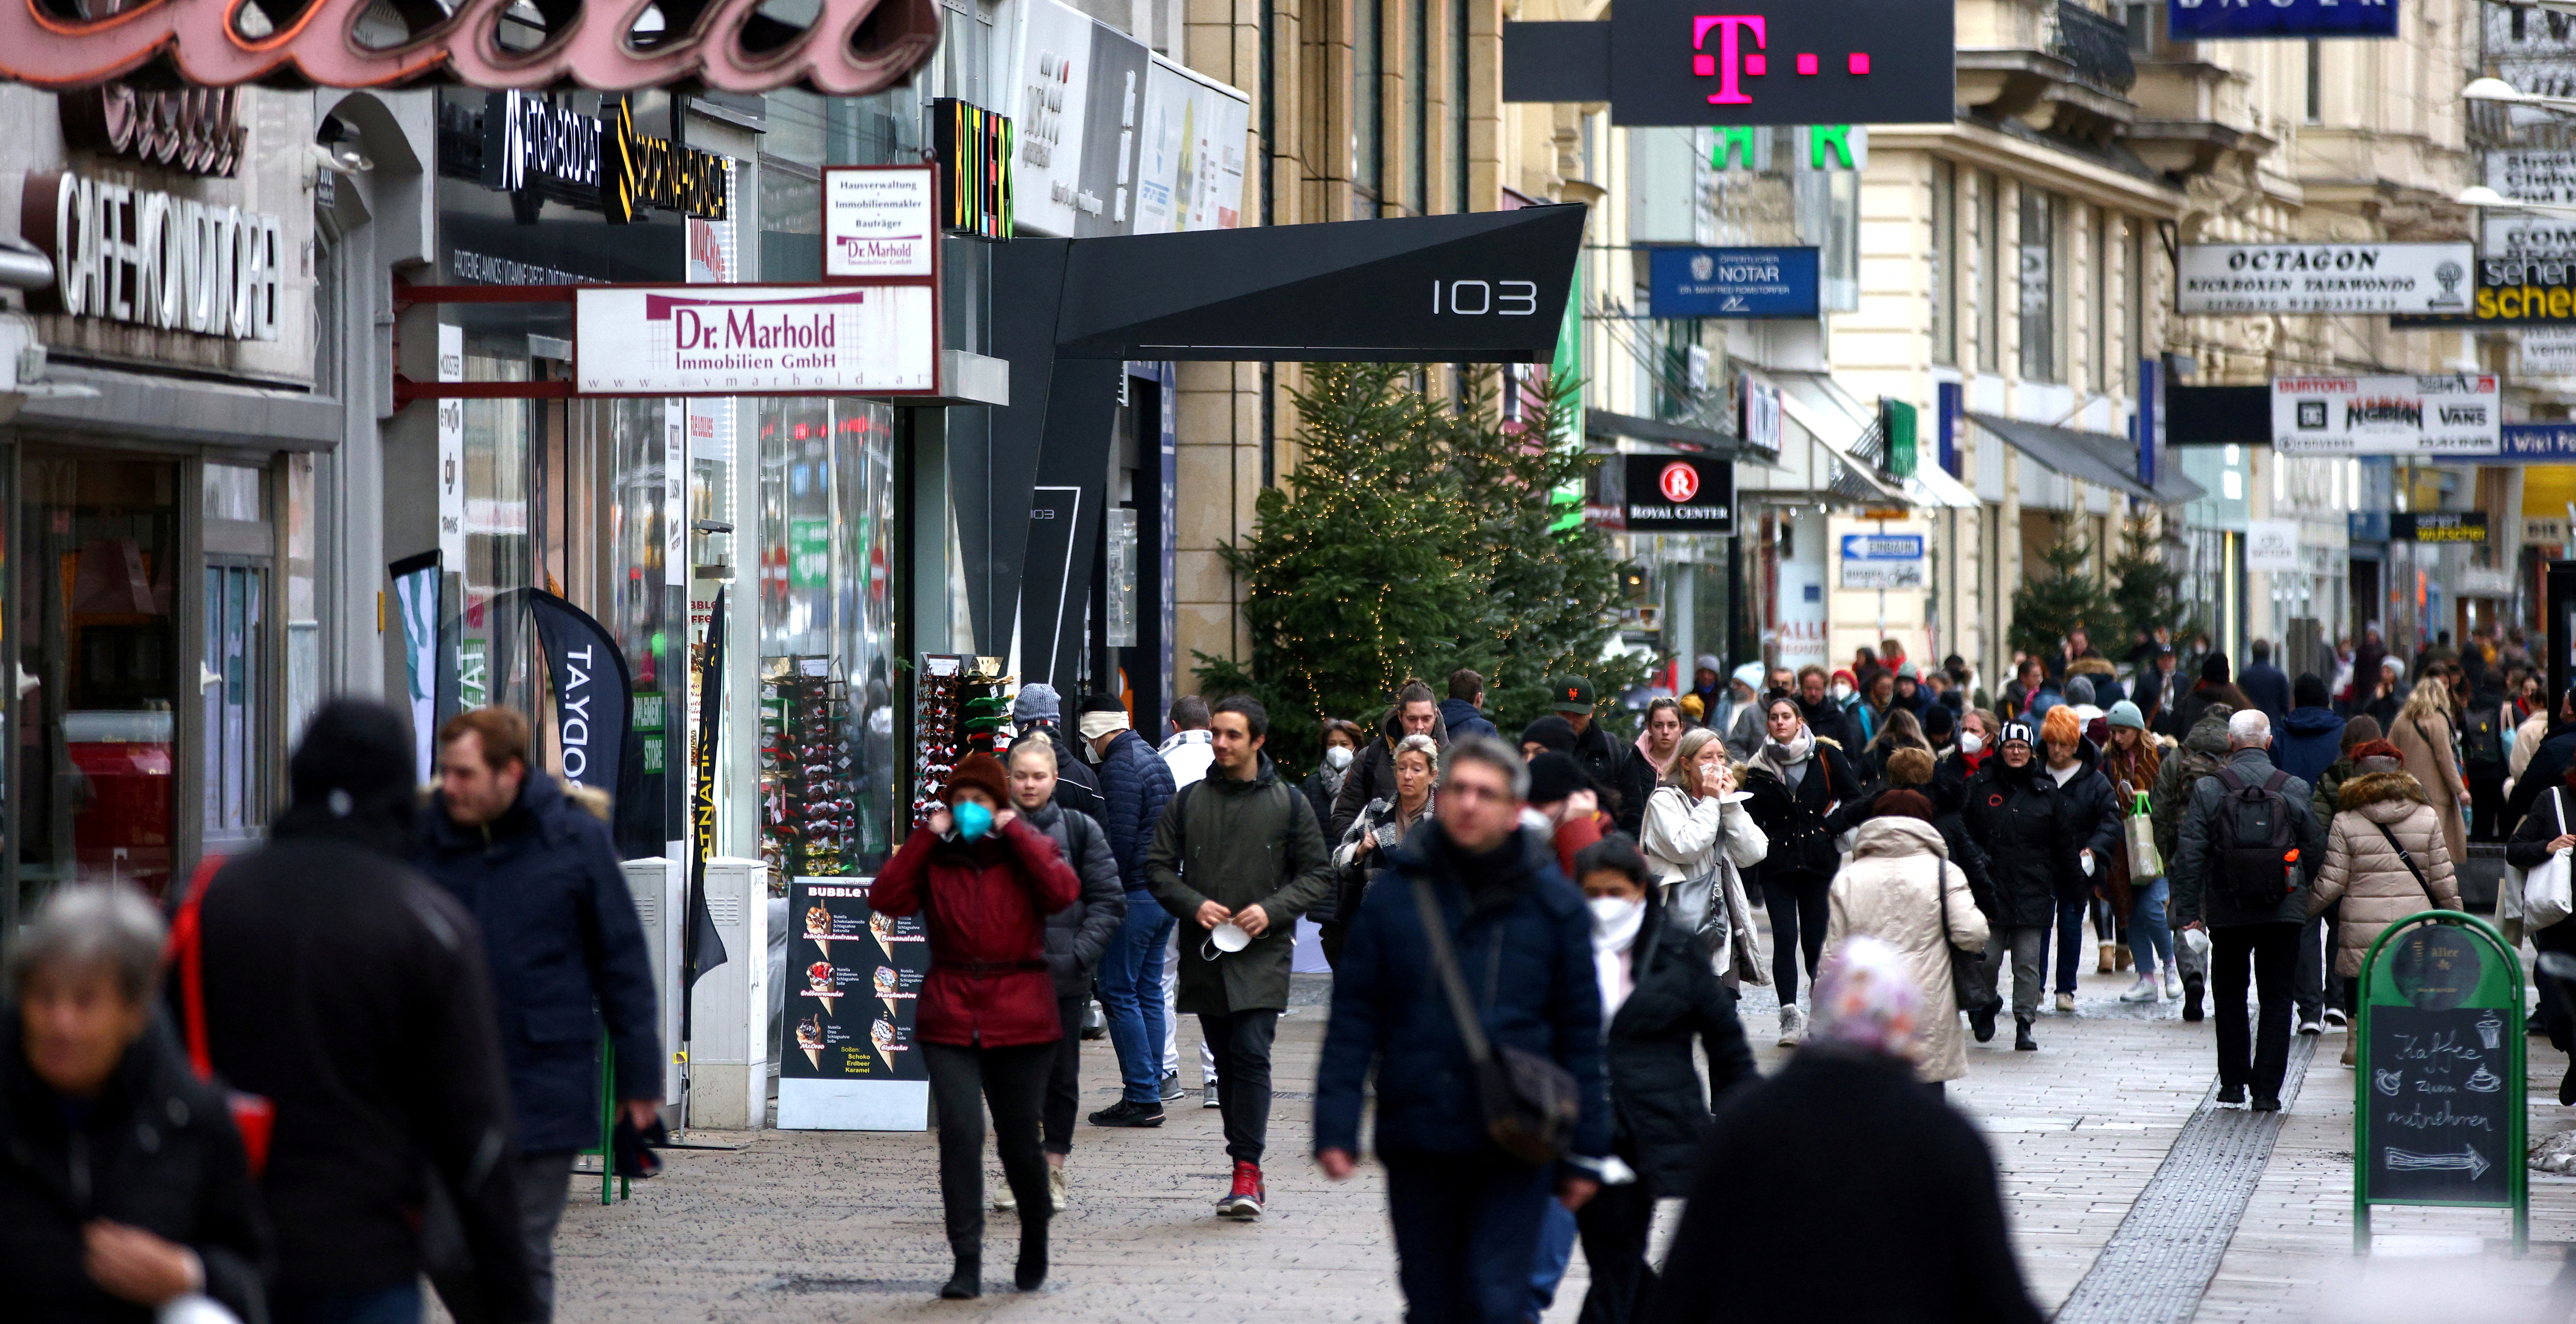 FOTO DE ARCHIVO: La gente camina a lo largo de una calle comercial en Viena, Austria, el 13 de diciembre de 2021. REUTERS/Lisi Niesner